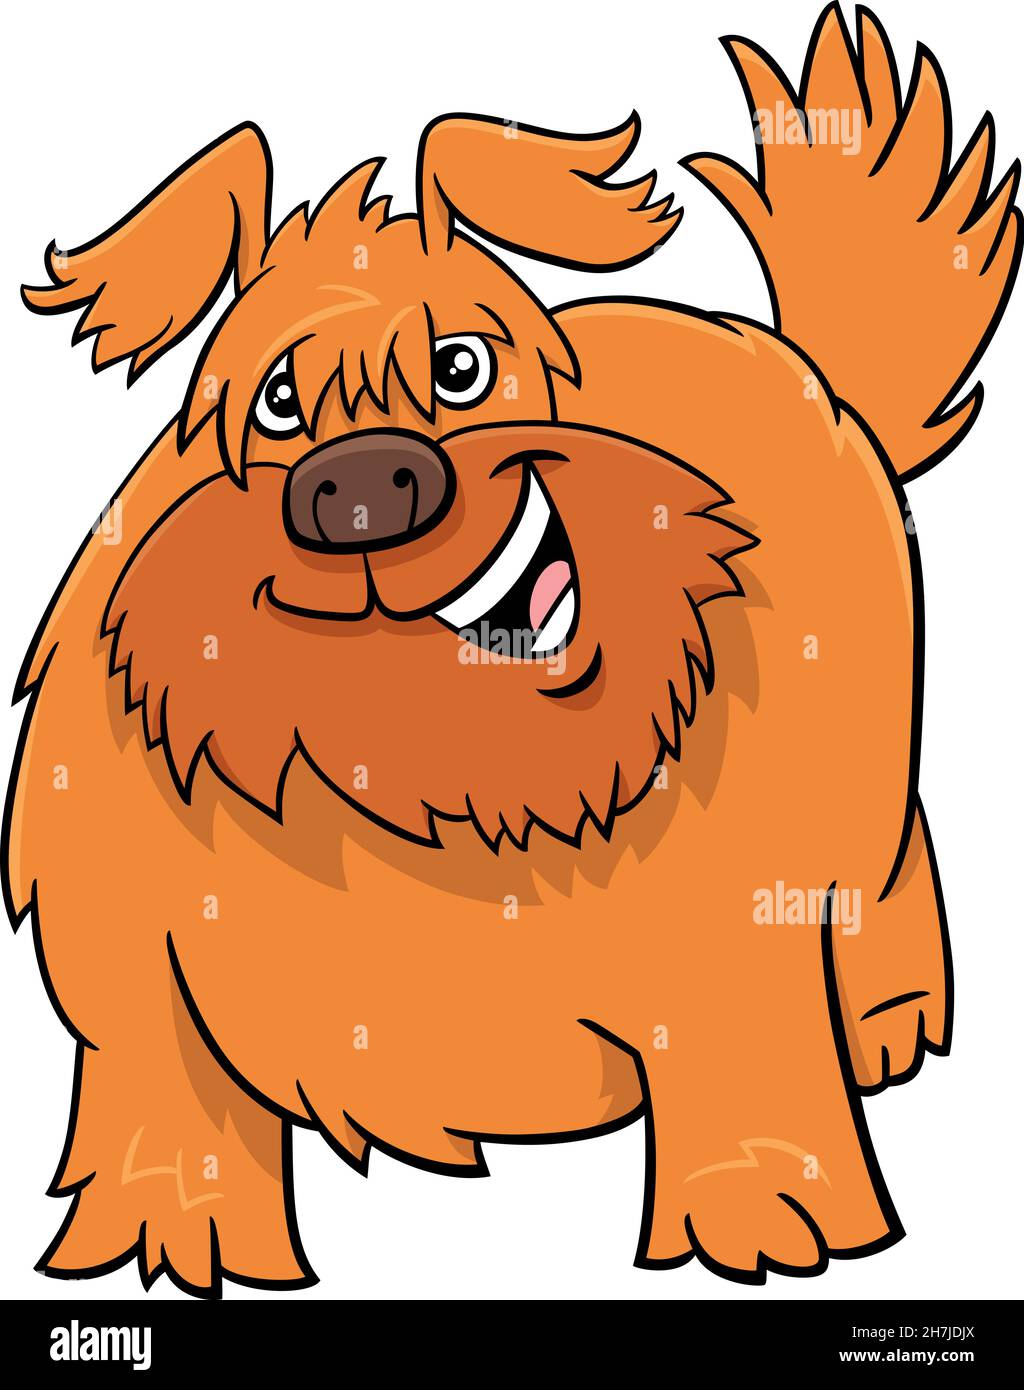 Illustrazione di cartone animato di divertente personaggio animale fumetto del cane shaggy Illustrazione Vettoriale